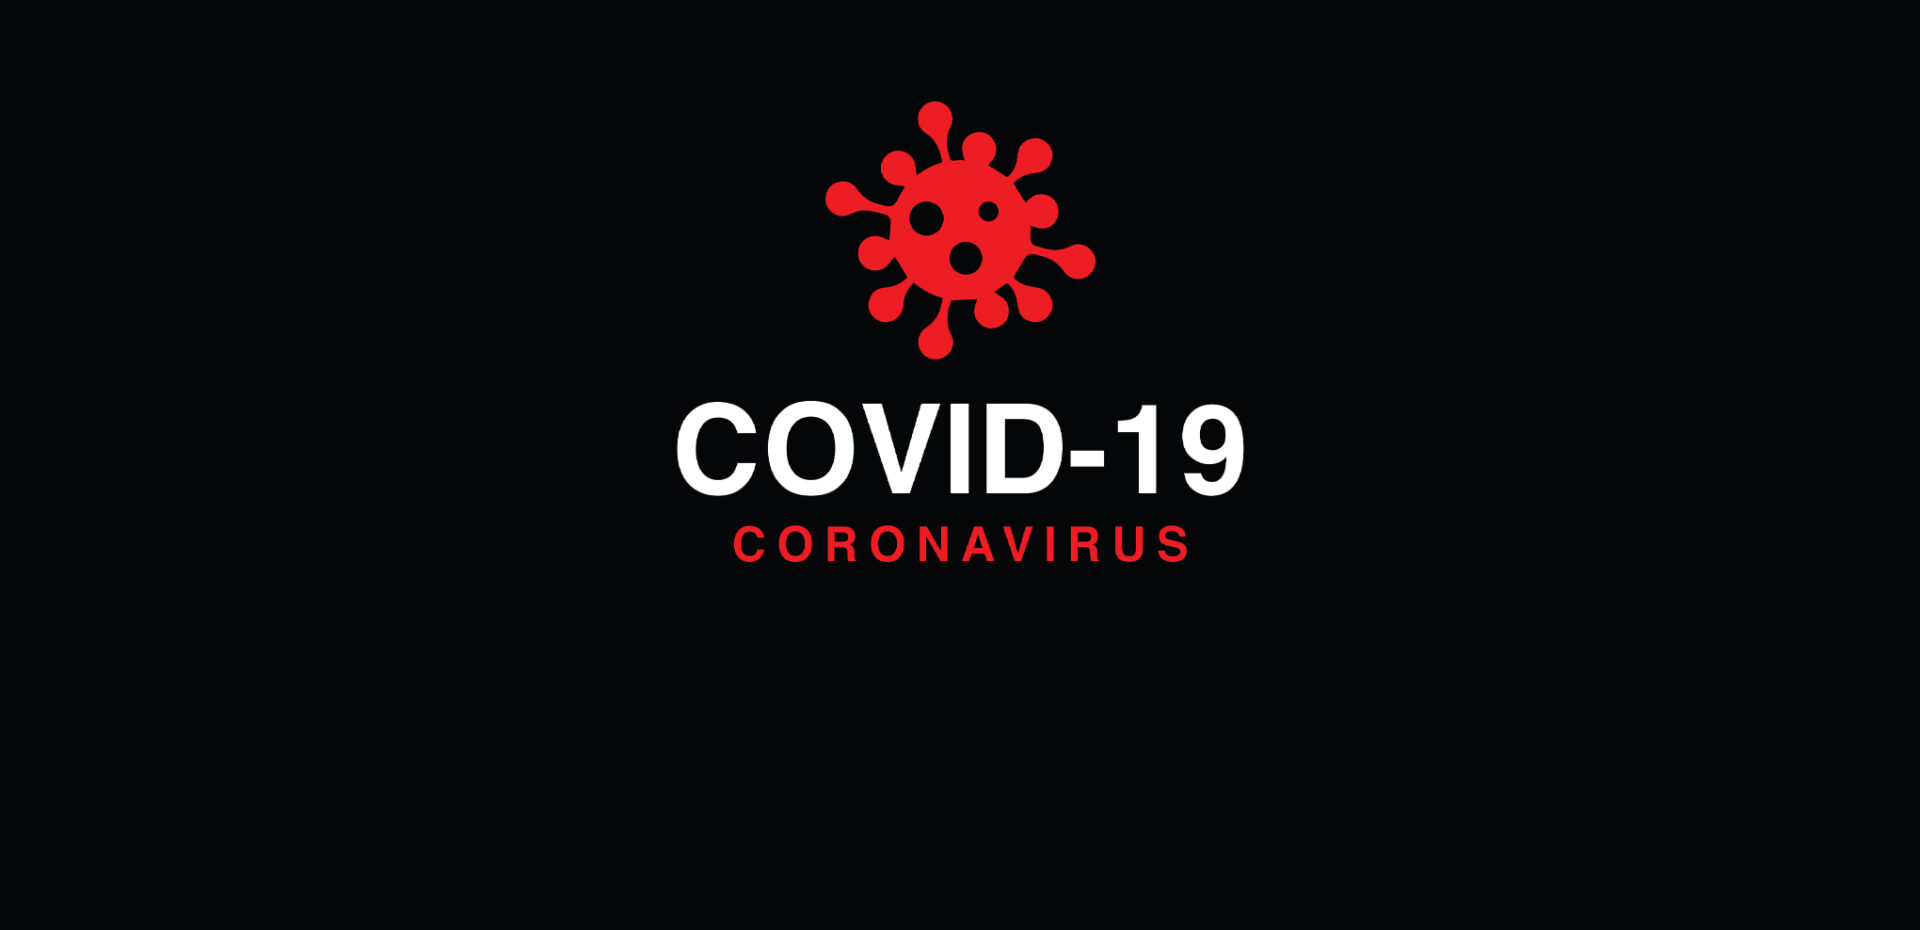 COVID-19 Coronavirus graphic